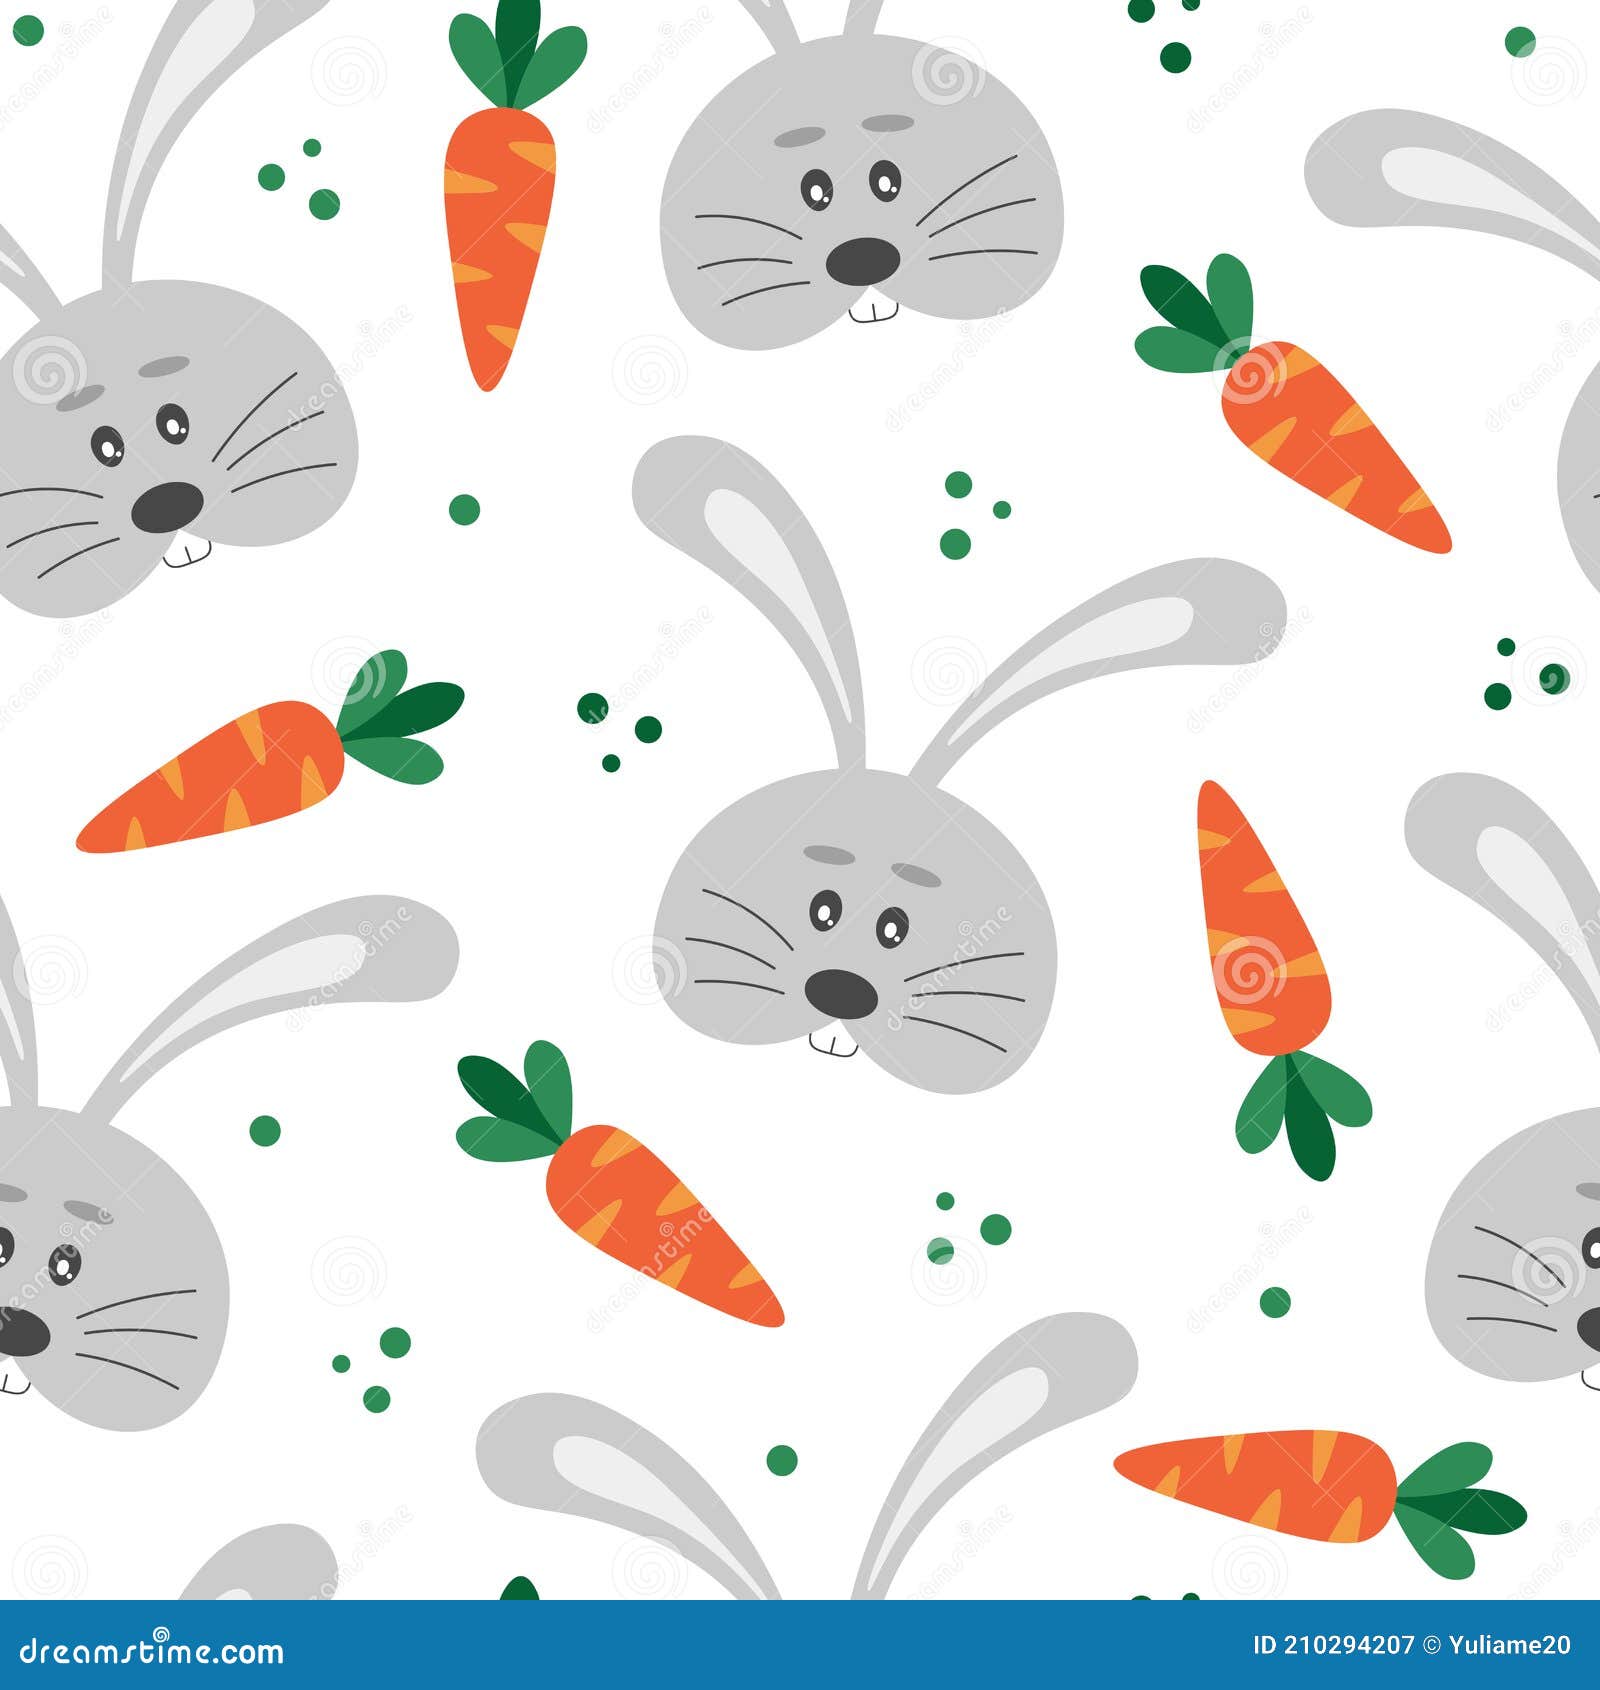 Agregar 96+ imagenes de conejos para fondo de pantalla mejor -  .vn